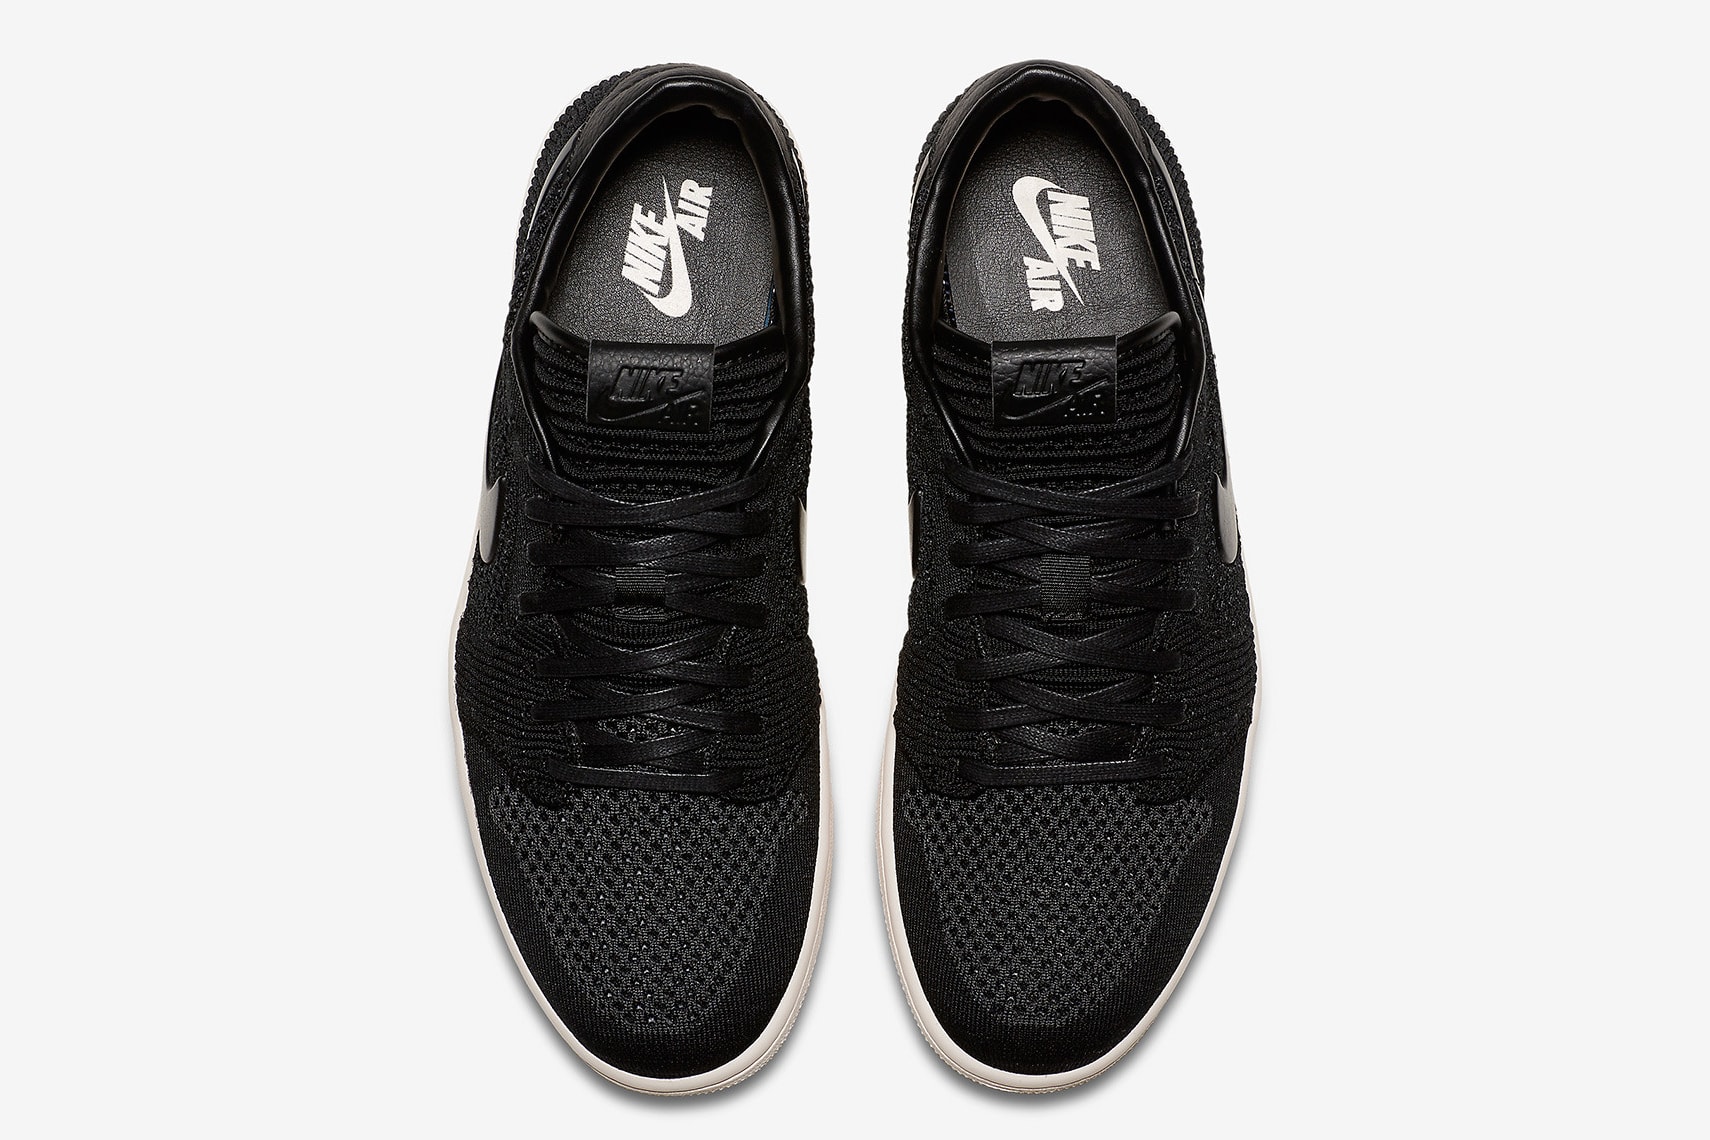 通気性を確保する Flyknit 仕様の Nike Air Jordan 1 Low “Black” のオフィシャル画像が公開  昨年リリースのOGカラーに引き続き、今度はFlyknitを纏ったロートップのAJ1が初登場 〈Jordan Brand（ジョーダン ブランド）〉は昨年、高強度のファイバーで軽量さと通気性を確保する〈Nike（ナイキ）〉のFlyknitテクノロジーを採用したAir Jordan 1をオリジナルのカラースキームでリリースした。そこでの好評を受け、遂にMichael Jordan（マイケル・ジョーダン）の初代シグネチャーから、ロートップモデルが初登場。先月末、オレンジ/セイルの“Shattered Backboard”の存在も明らかになったばかりであるが、公開されたオフィシャル画像はシンプルなブラック/クリームの一足で、シュータンには編み込みパターンが採用されている。発売日や価格などは公表されていないので、ここは辛抱強く、『SNKRS』のアップデートを待とう。  この機会に、『atmos（アトモス）』限定販売となるAir More Moneyのスペシャルモデルもチェックしてみてはいかがだろうか。